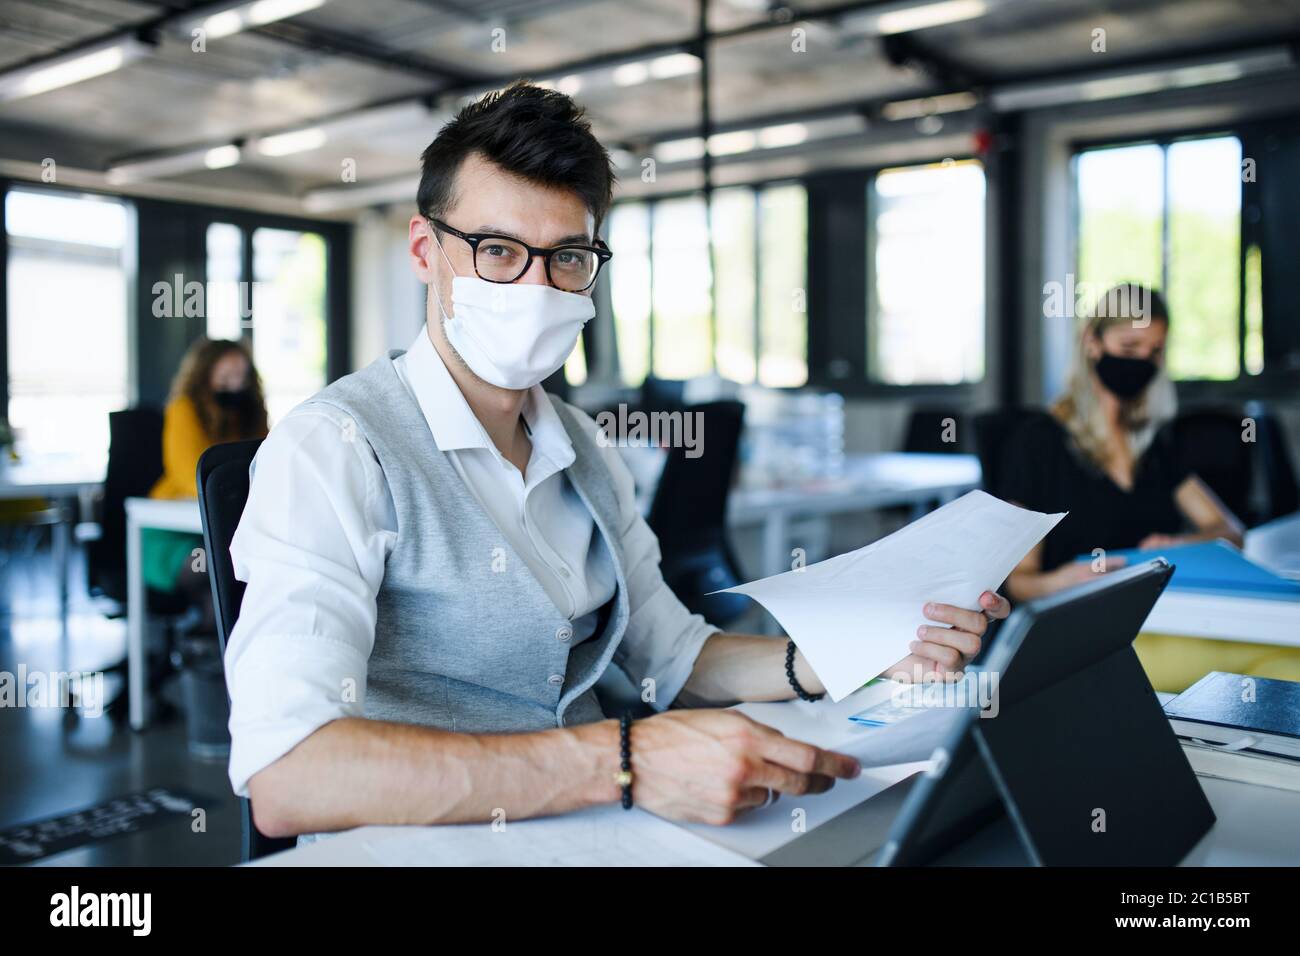 Porträt des jungen Mannes mit Gesichtsmaske zurück bei der Arbeit im Büro nach Lockdown. Stockfoto